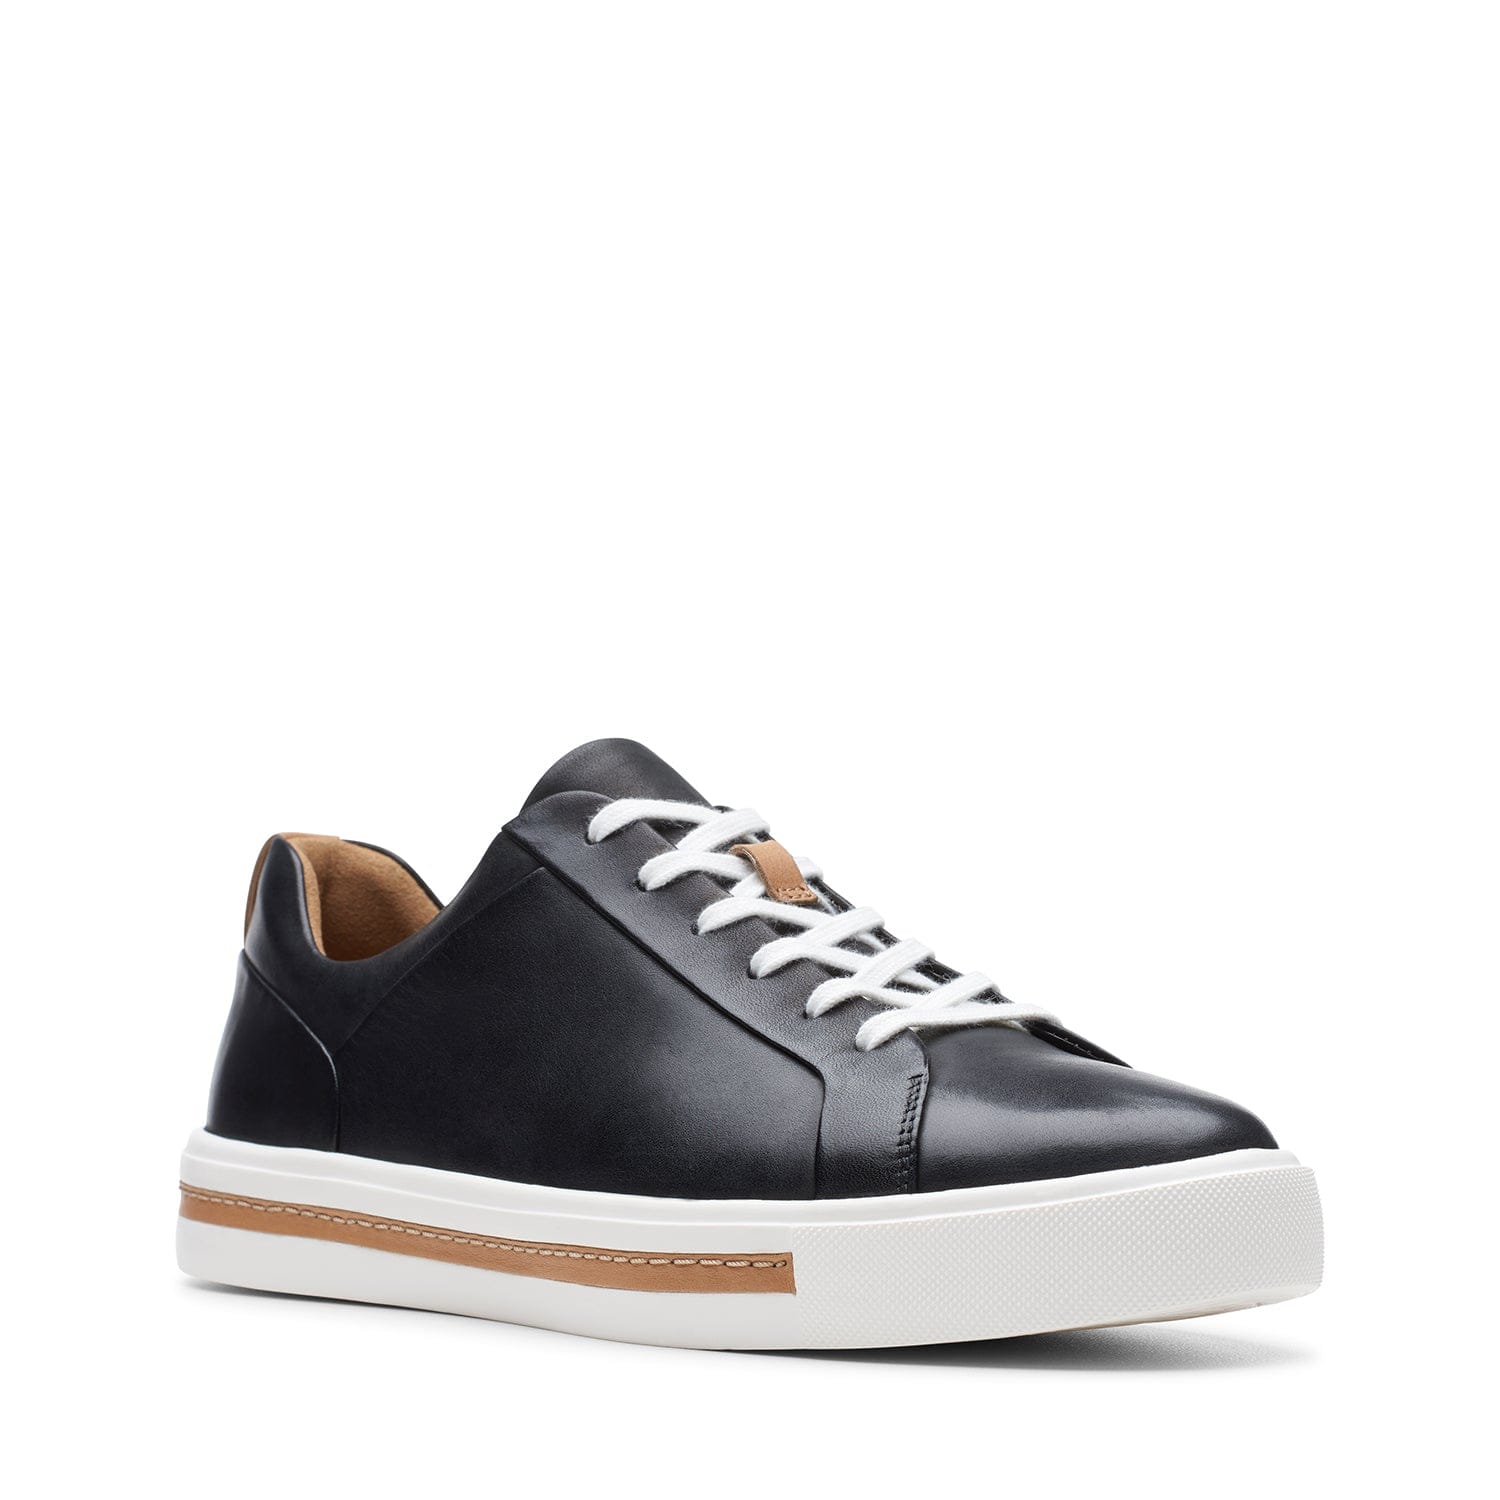 Clarks Un Maui Lace - Shoes - Black Leather - 261416425 - E Width (Wide Fit)